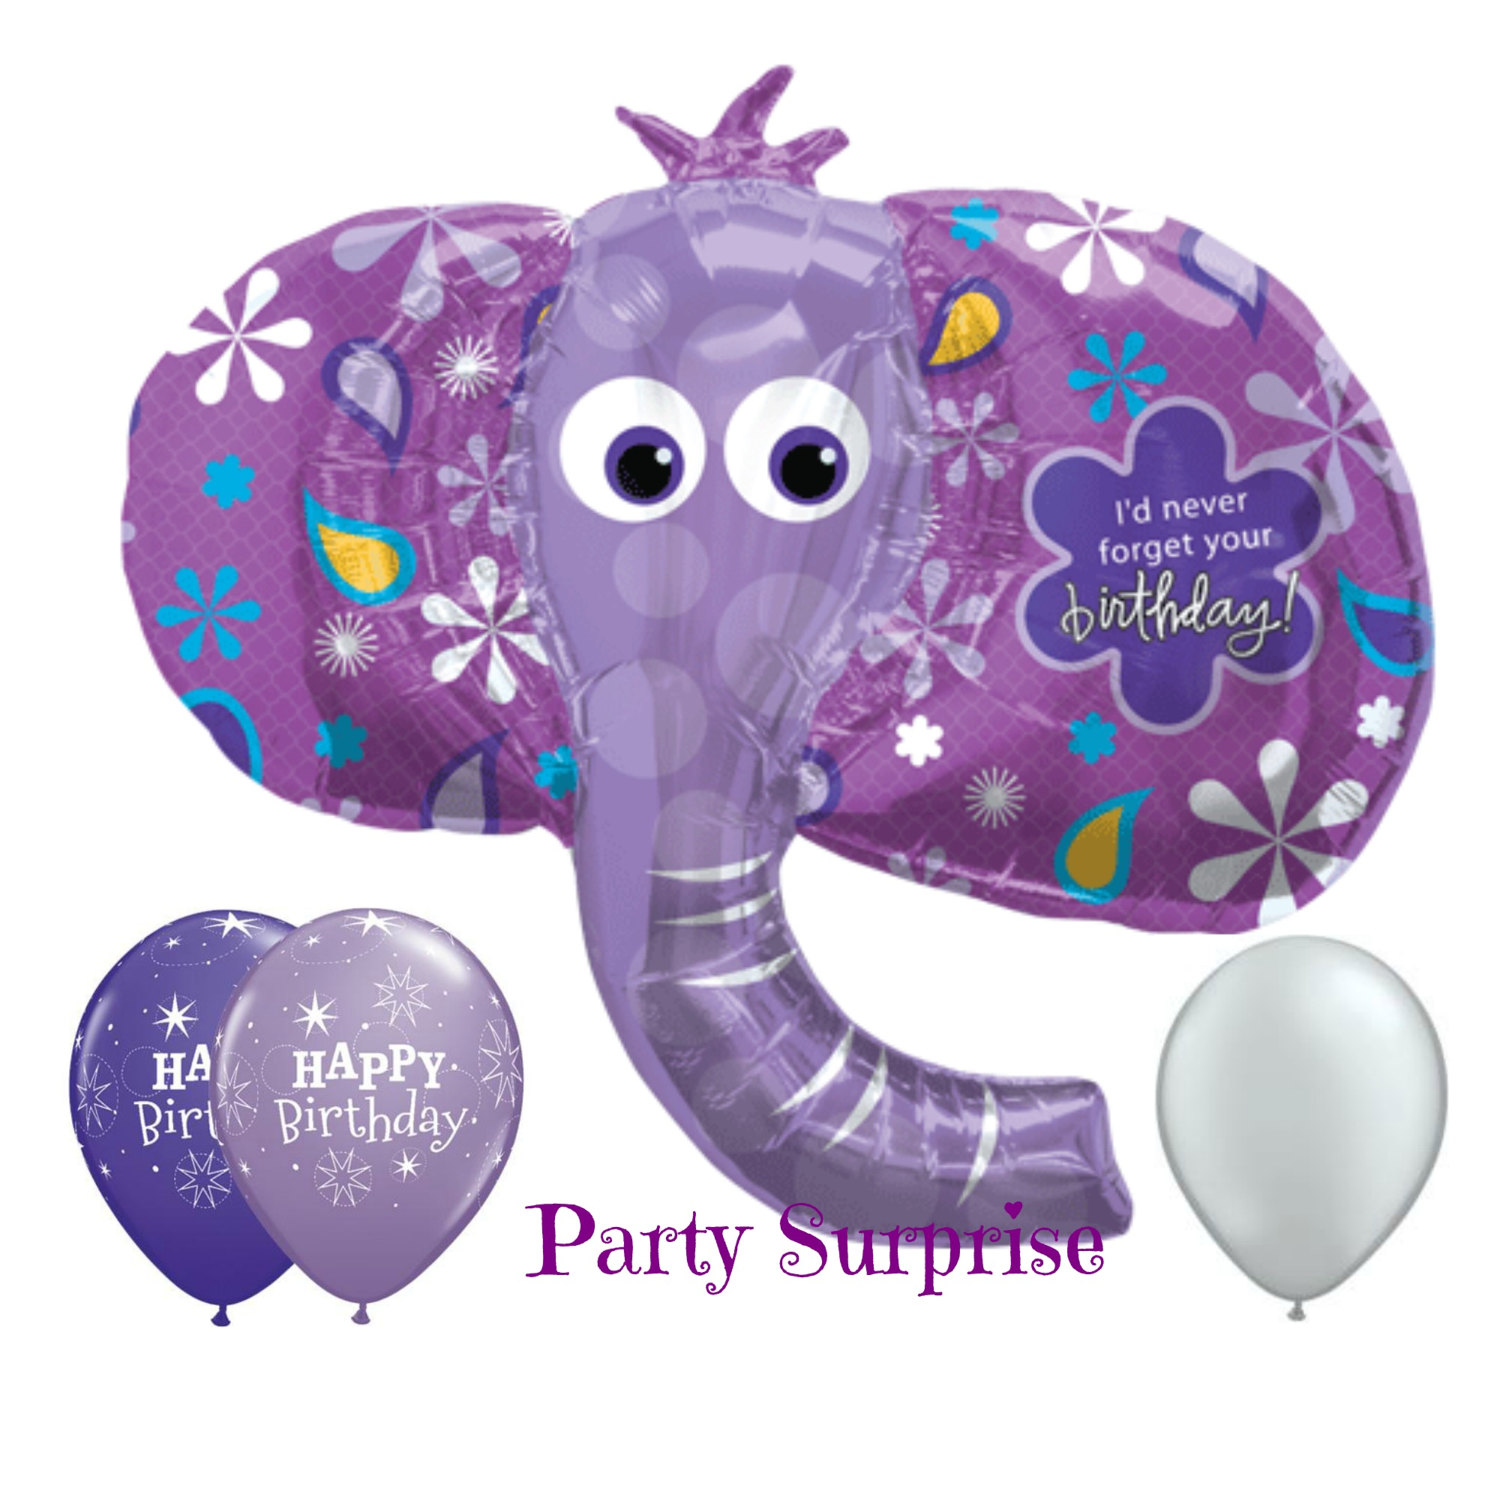 Sale Elephant Birthday Balloon Jumbo Purple Elephant Happy